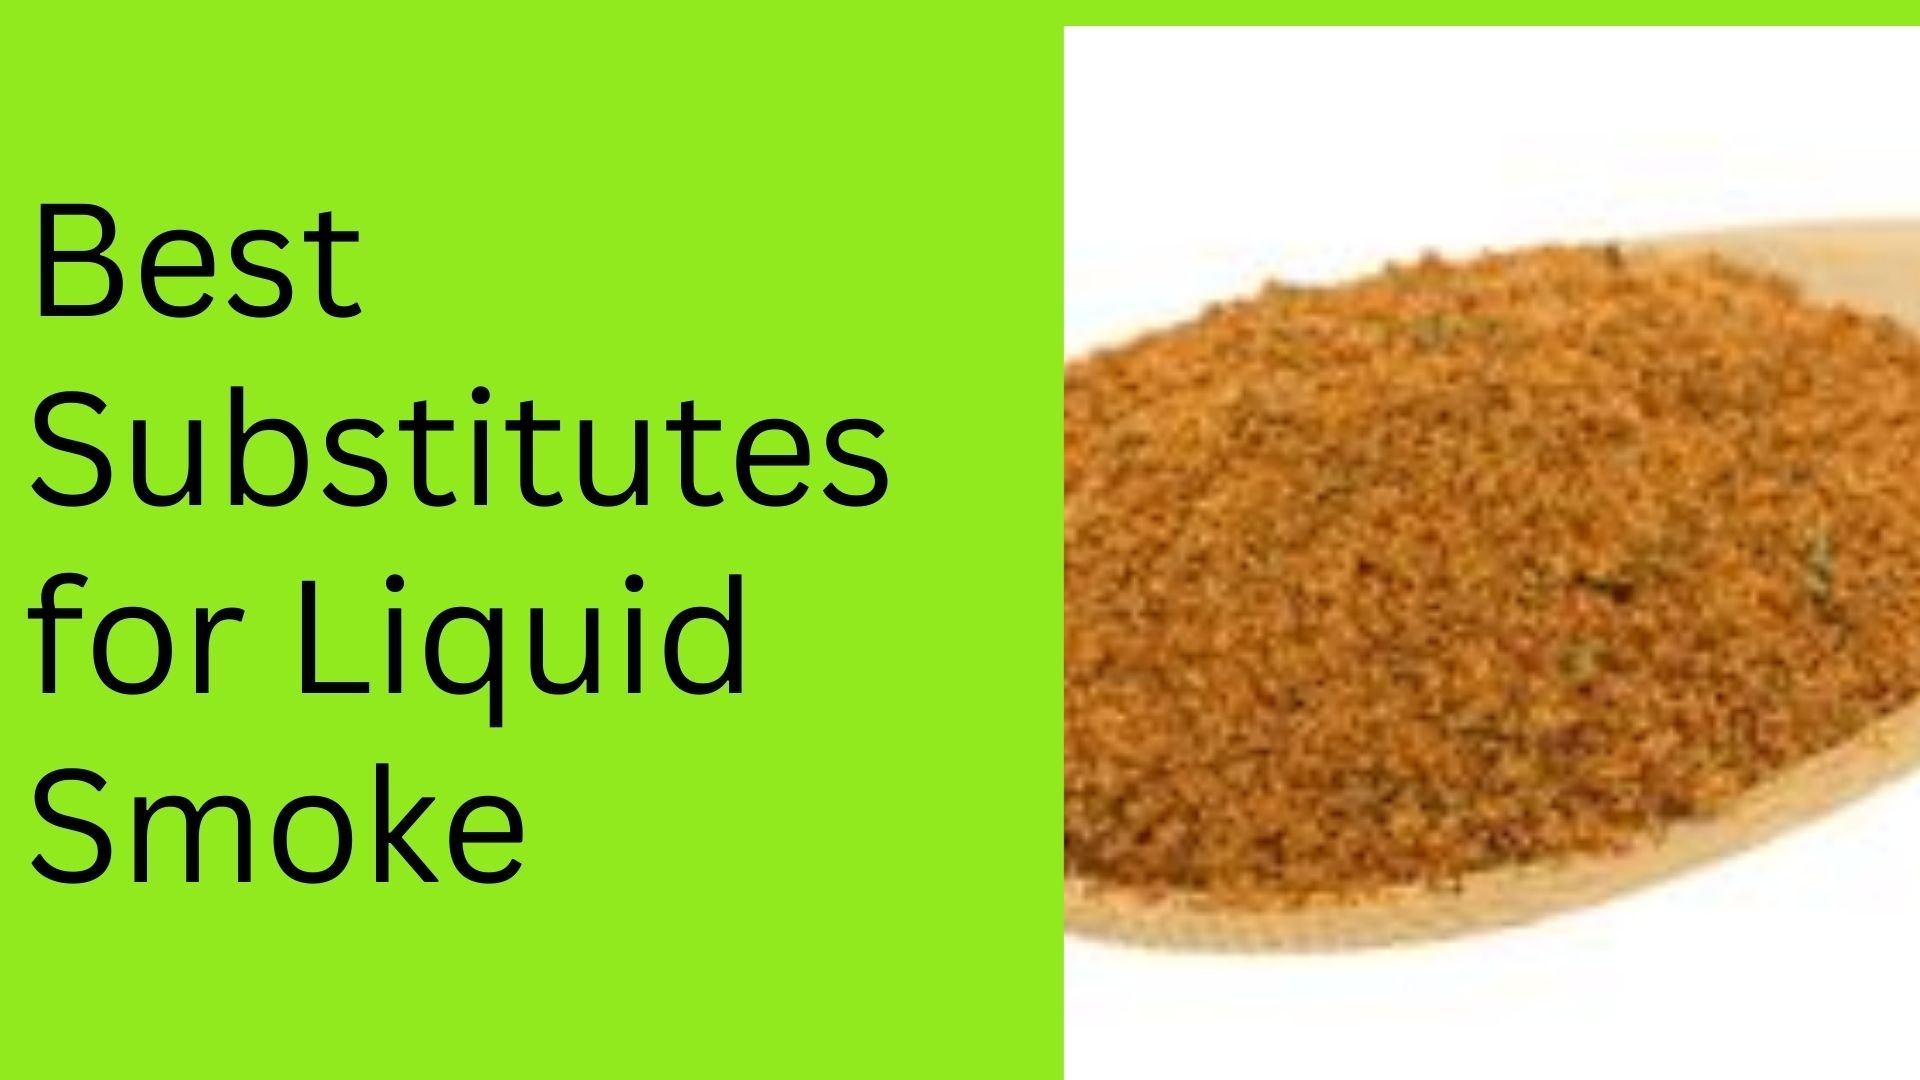 Best Substitutes for Liquid Smoke